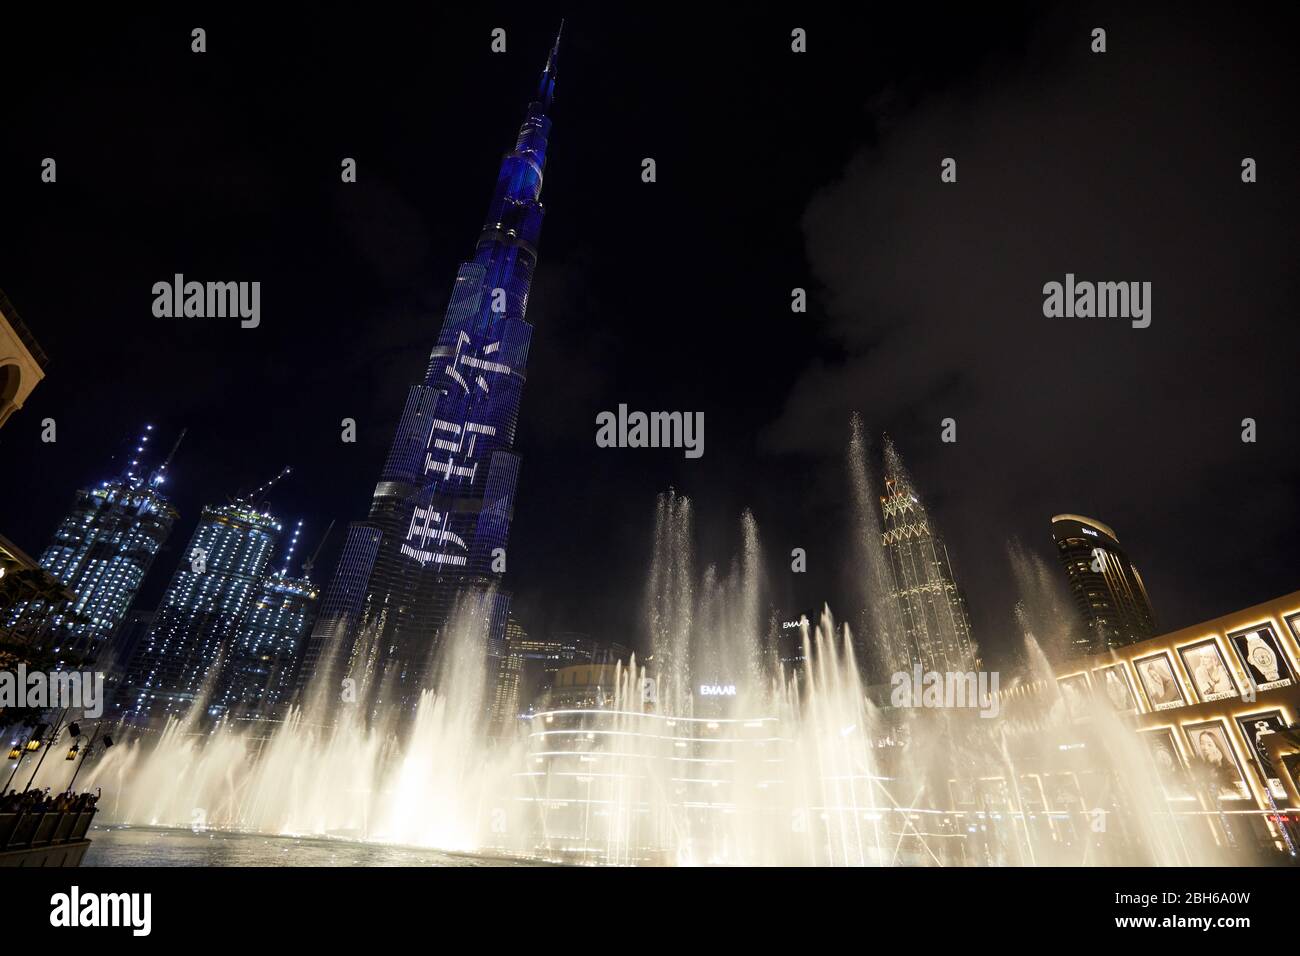 DUBAI, VEREINIGTE ARABISCHE EMIRATE - 21. NOVEMBER 2019: Burj Khalifa Wolkenkratzer beleuchtet bei Nacht und Fountain Show vor der Dubai Mall Stockfoto